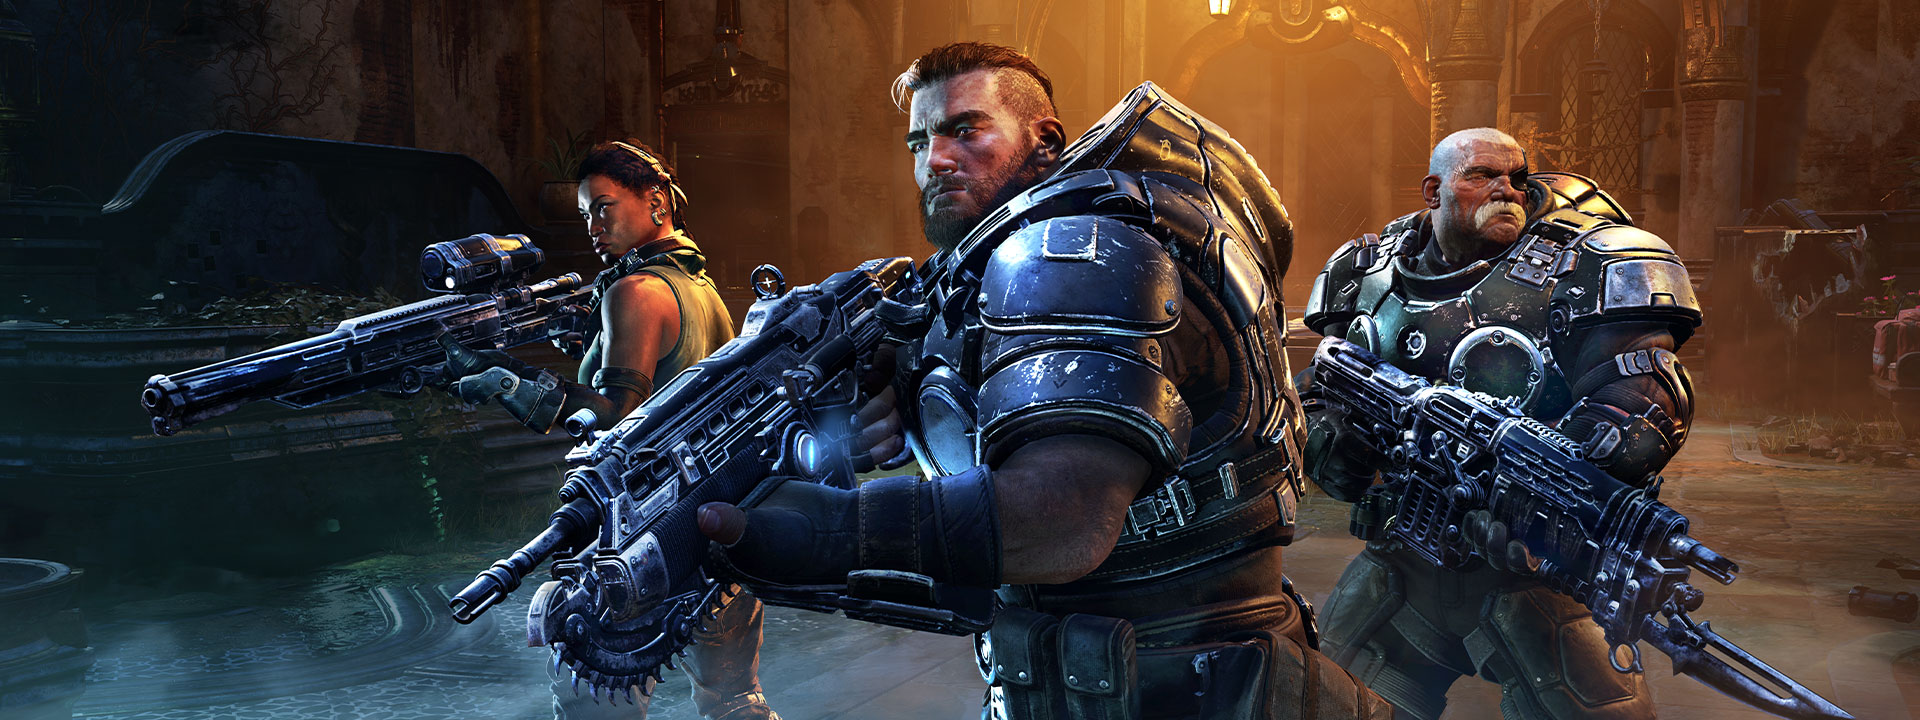 Οι χαρακτήρες Mikayla, Gabe και Sid από το Gears Tactics ετοιμάζονται για μάχη με τα όπλα τους